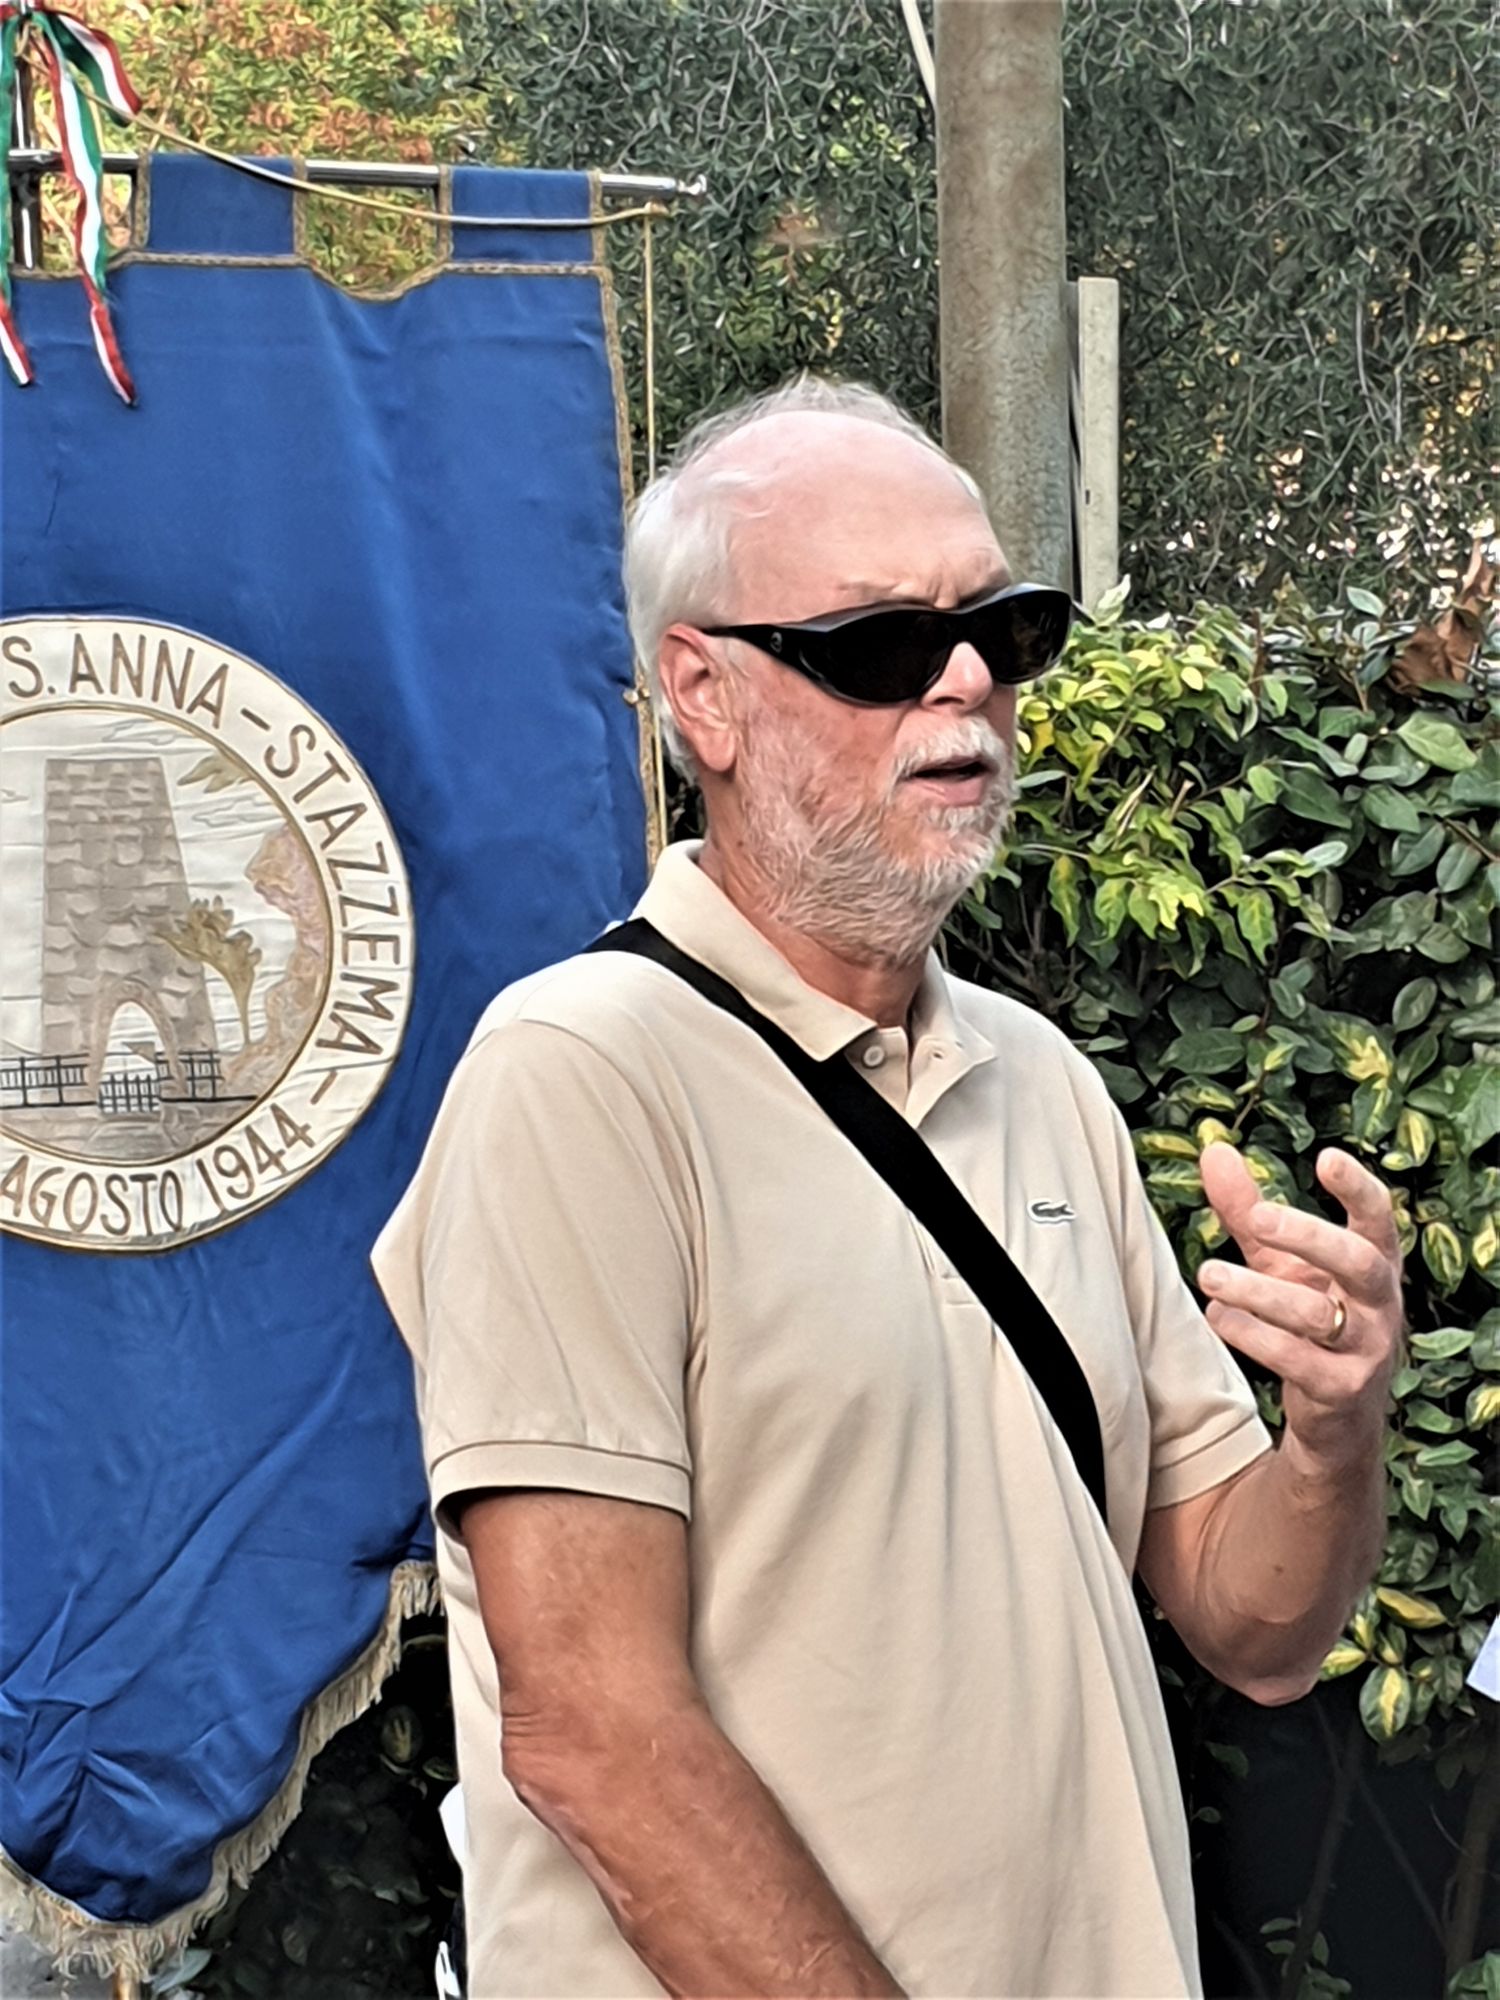 Liberazione a Pietrasanta, l’Anpi prende le distanze: “Il sindaco non ironizzi su Bella Ciao”